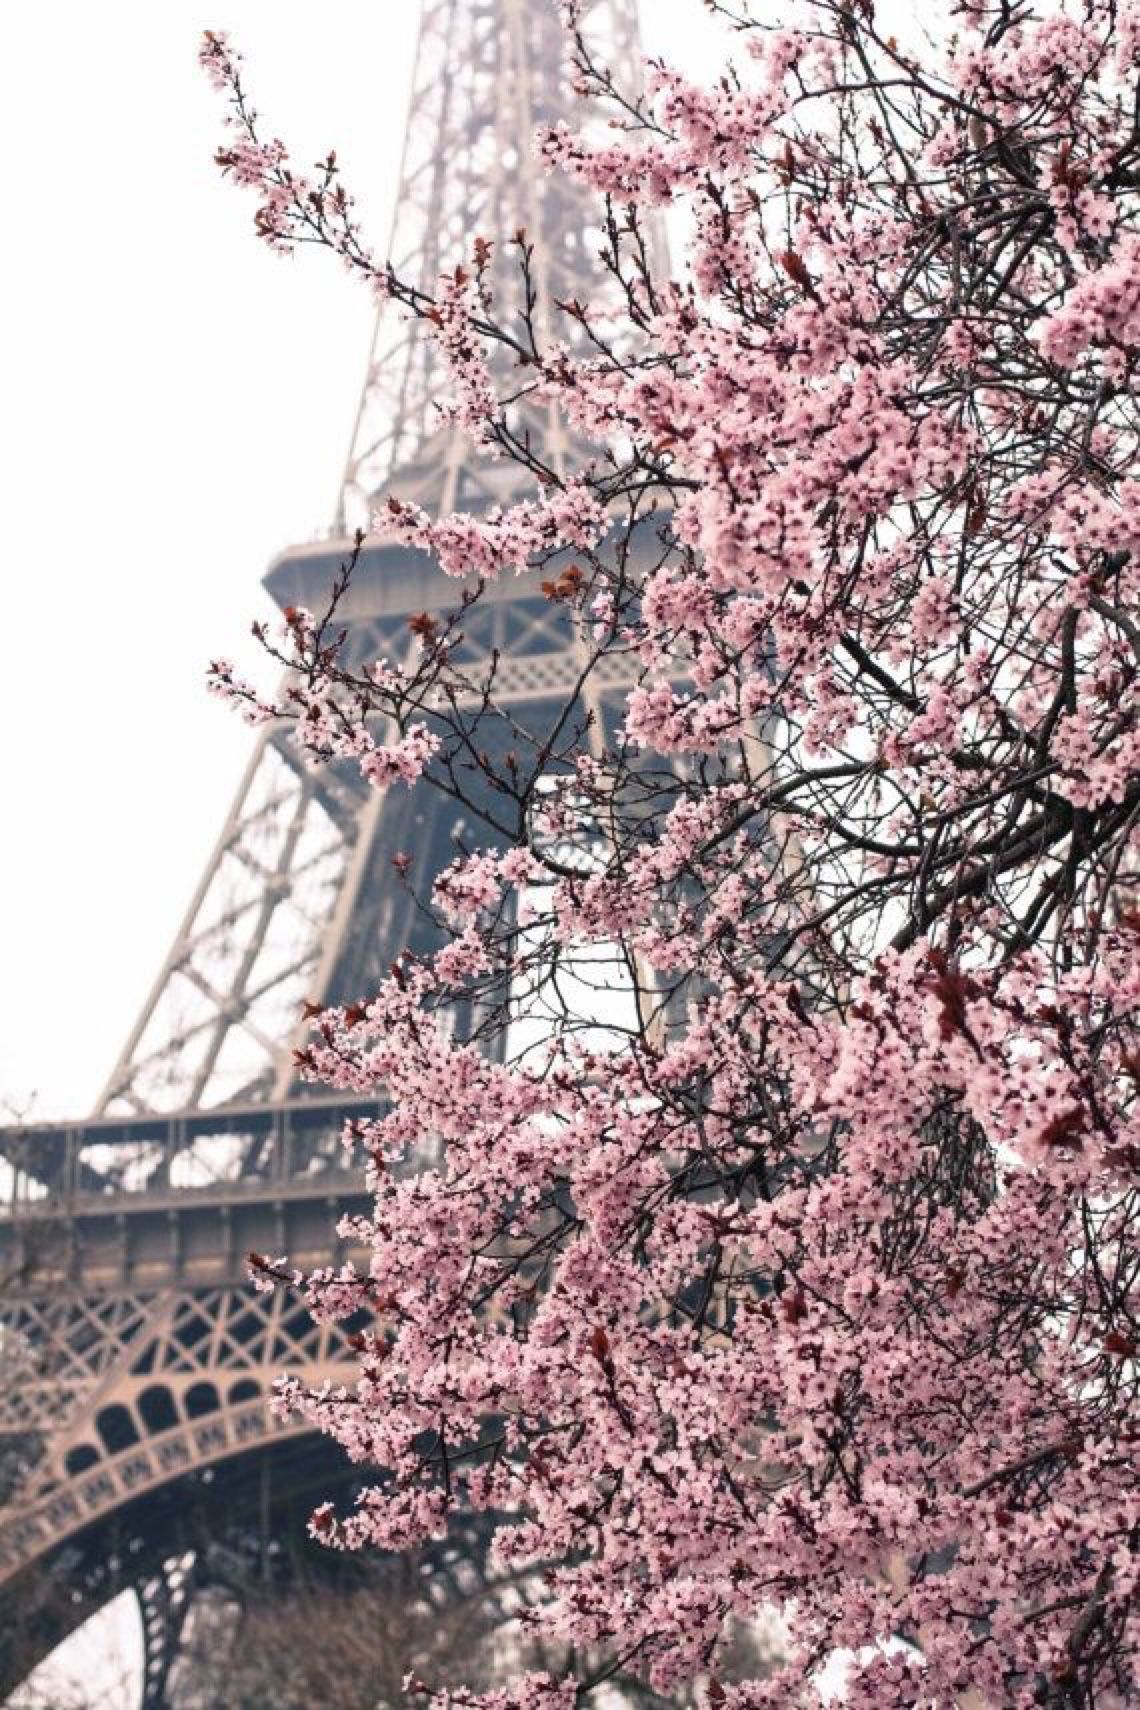 iPhone Wallpaper. Paris photography, Paris, Eiffel tower